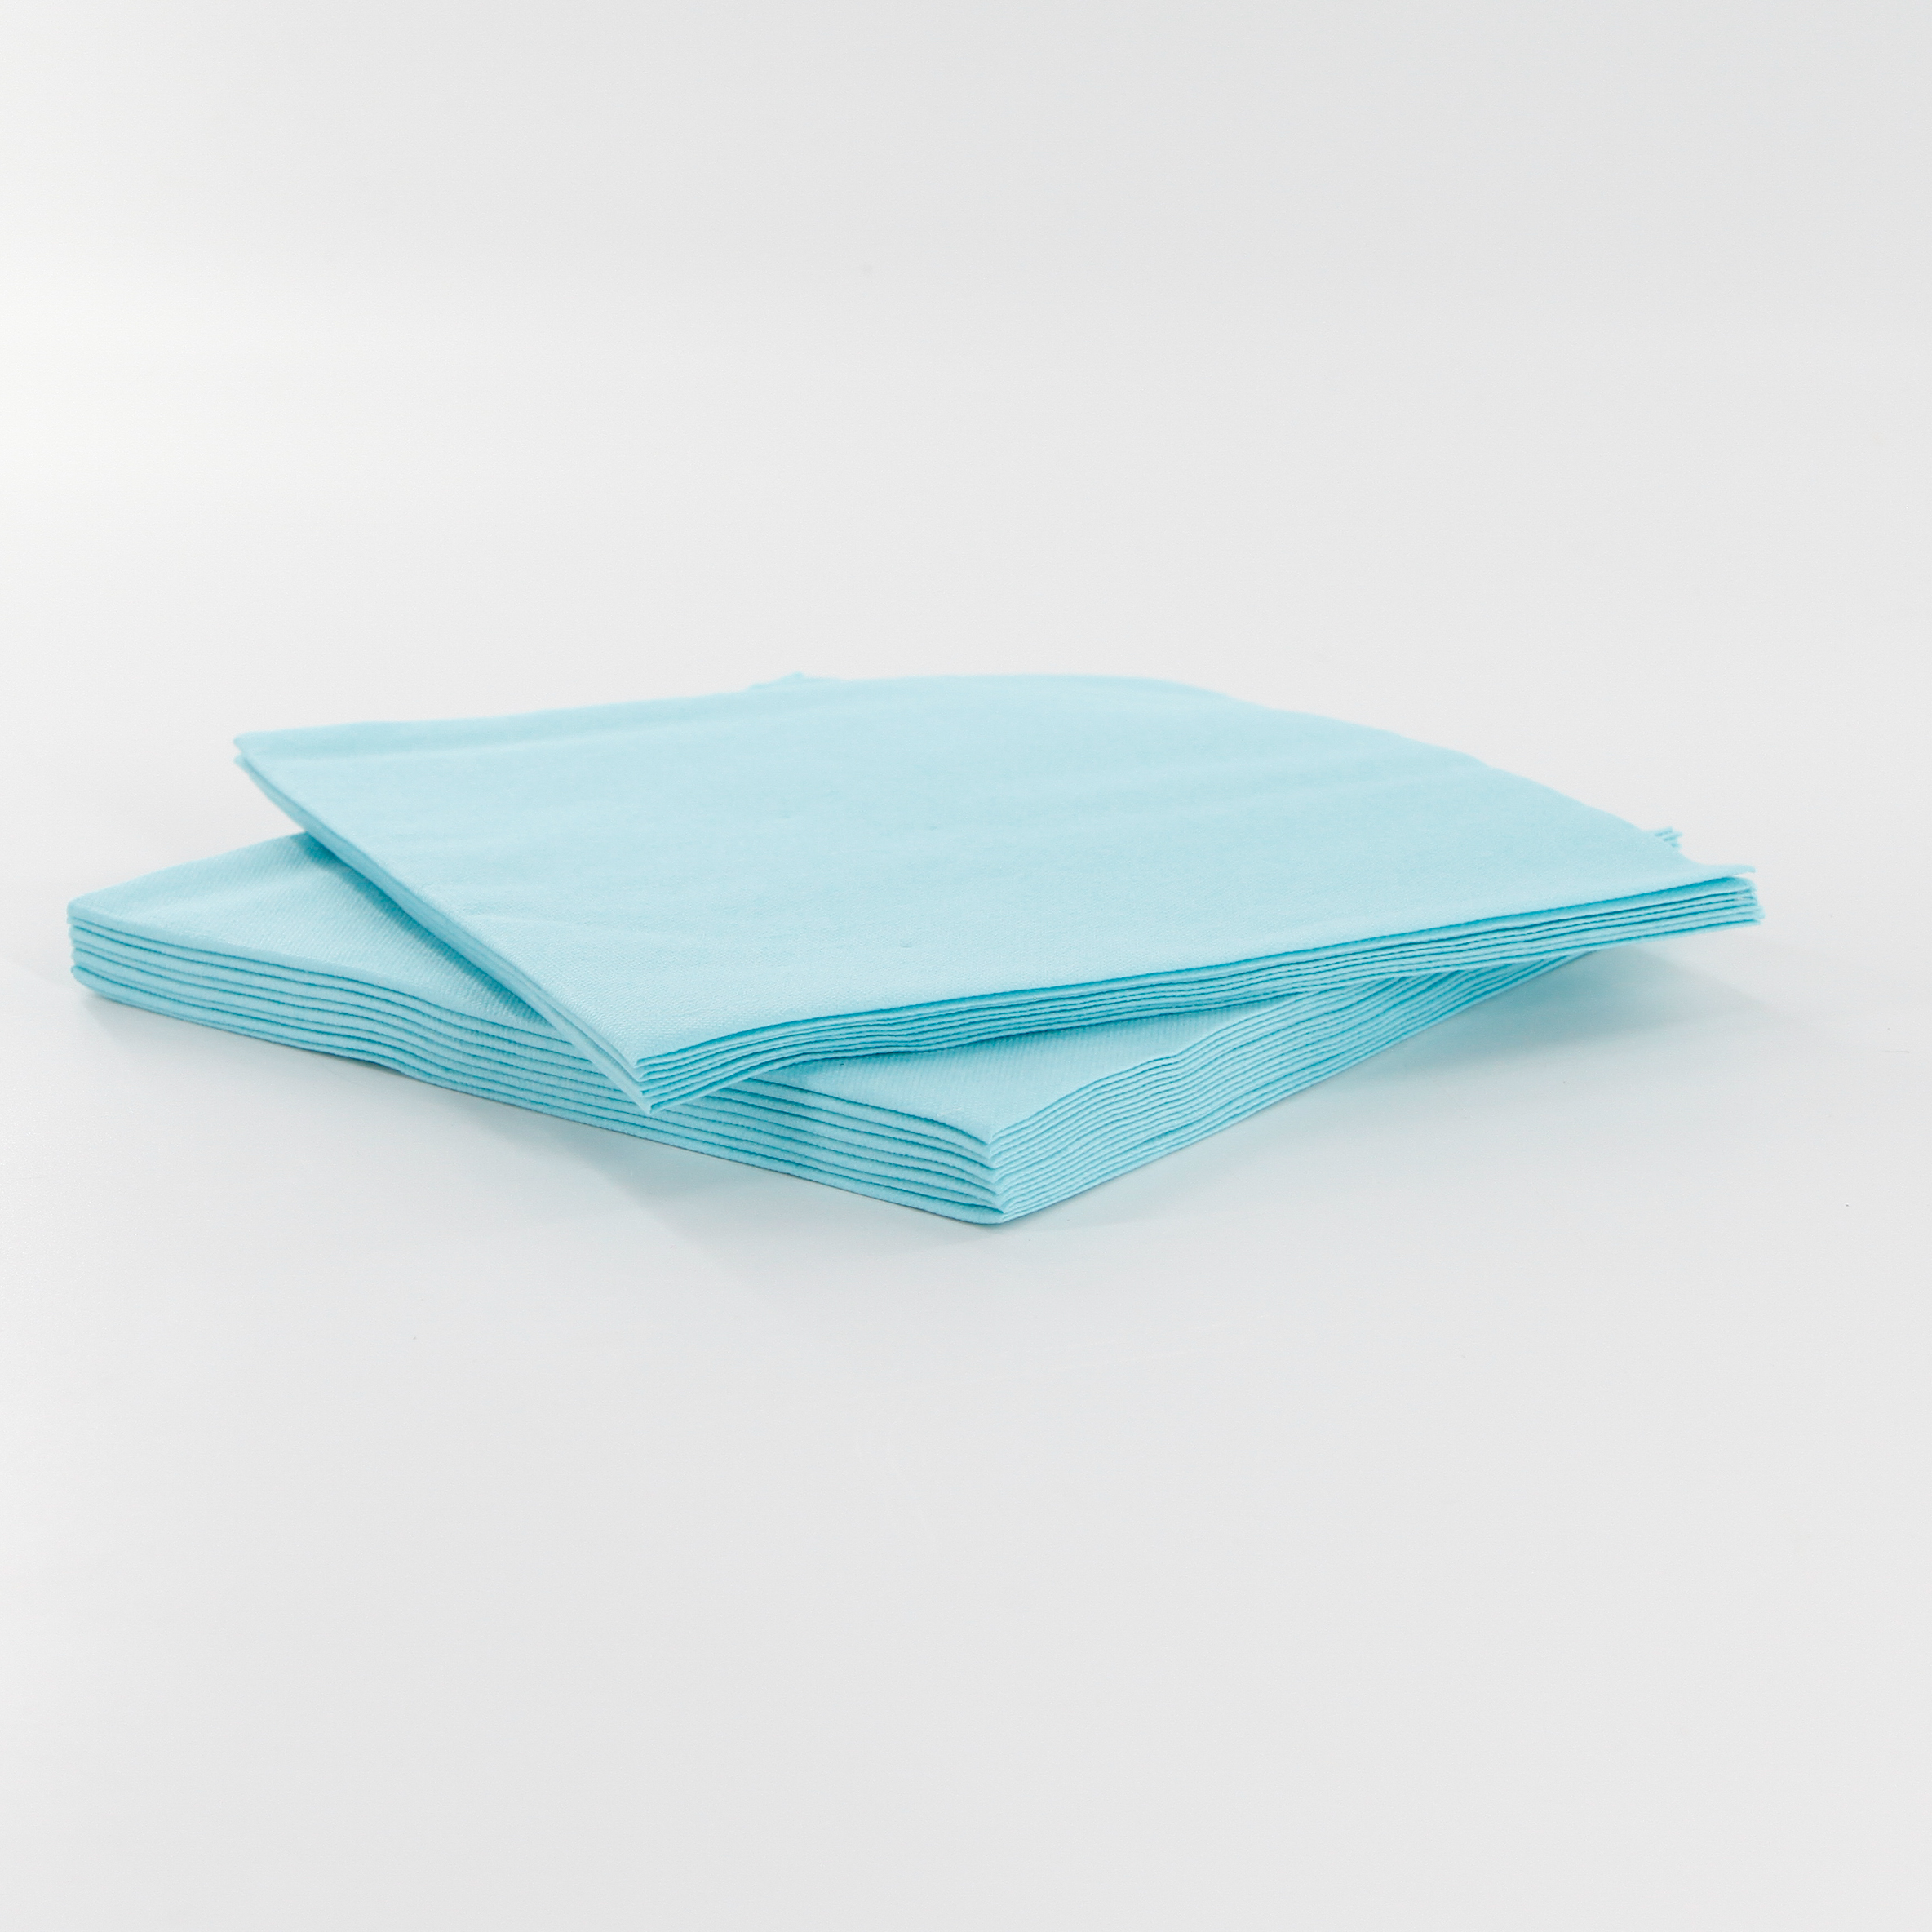 Papír ubrousek Napkins D-soft 40cm mint blue 12ka